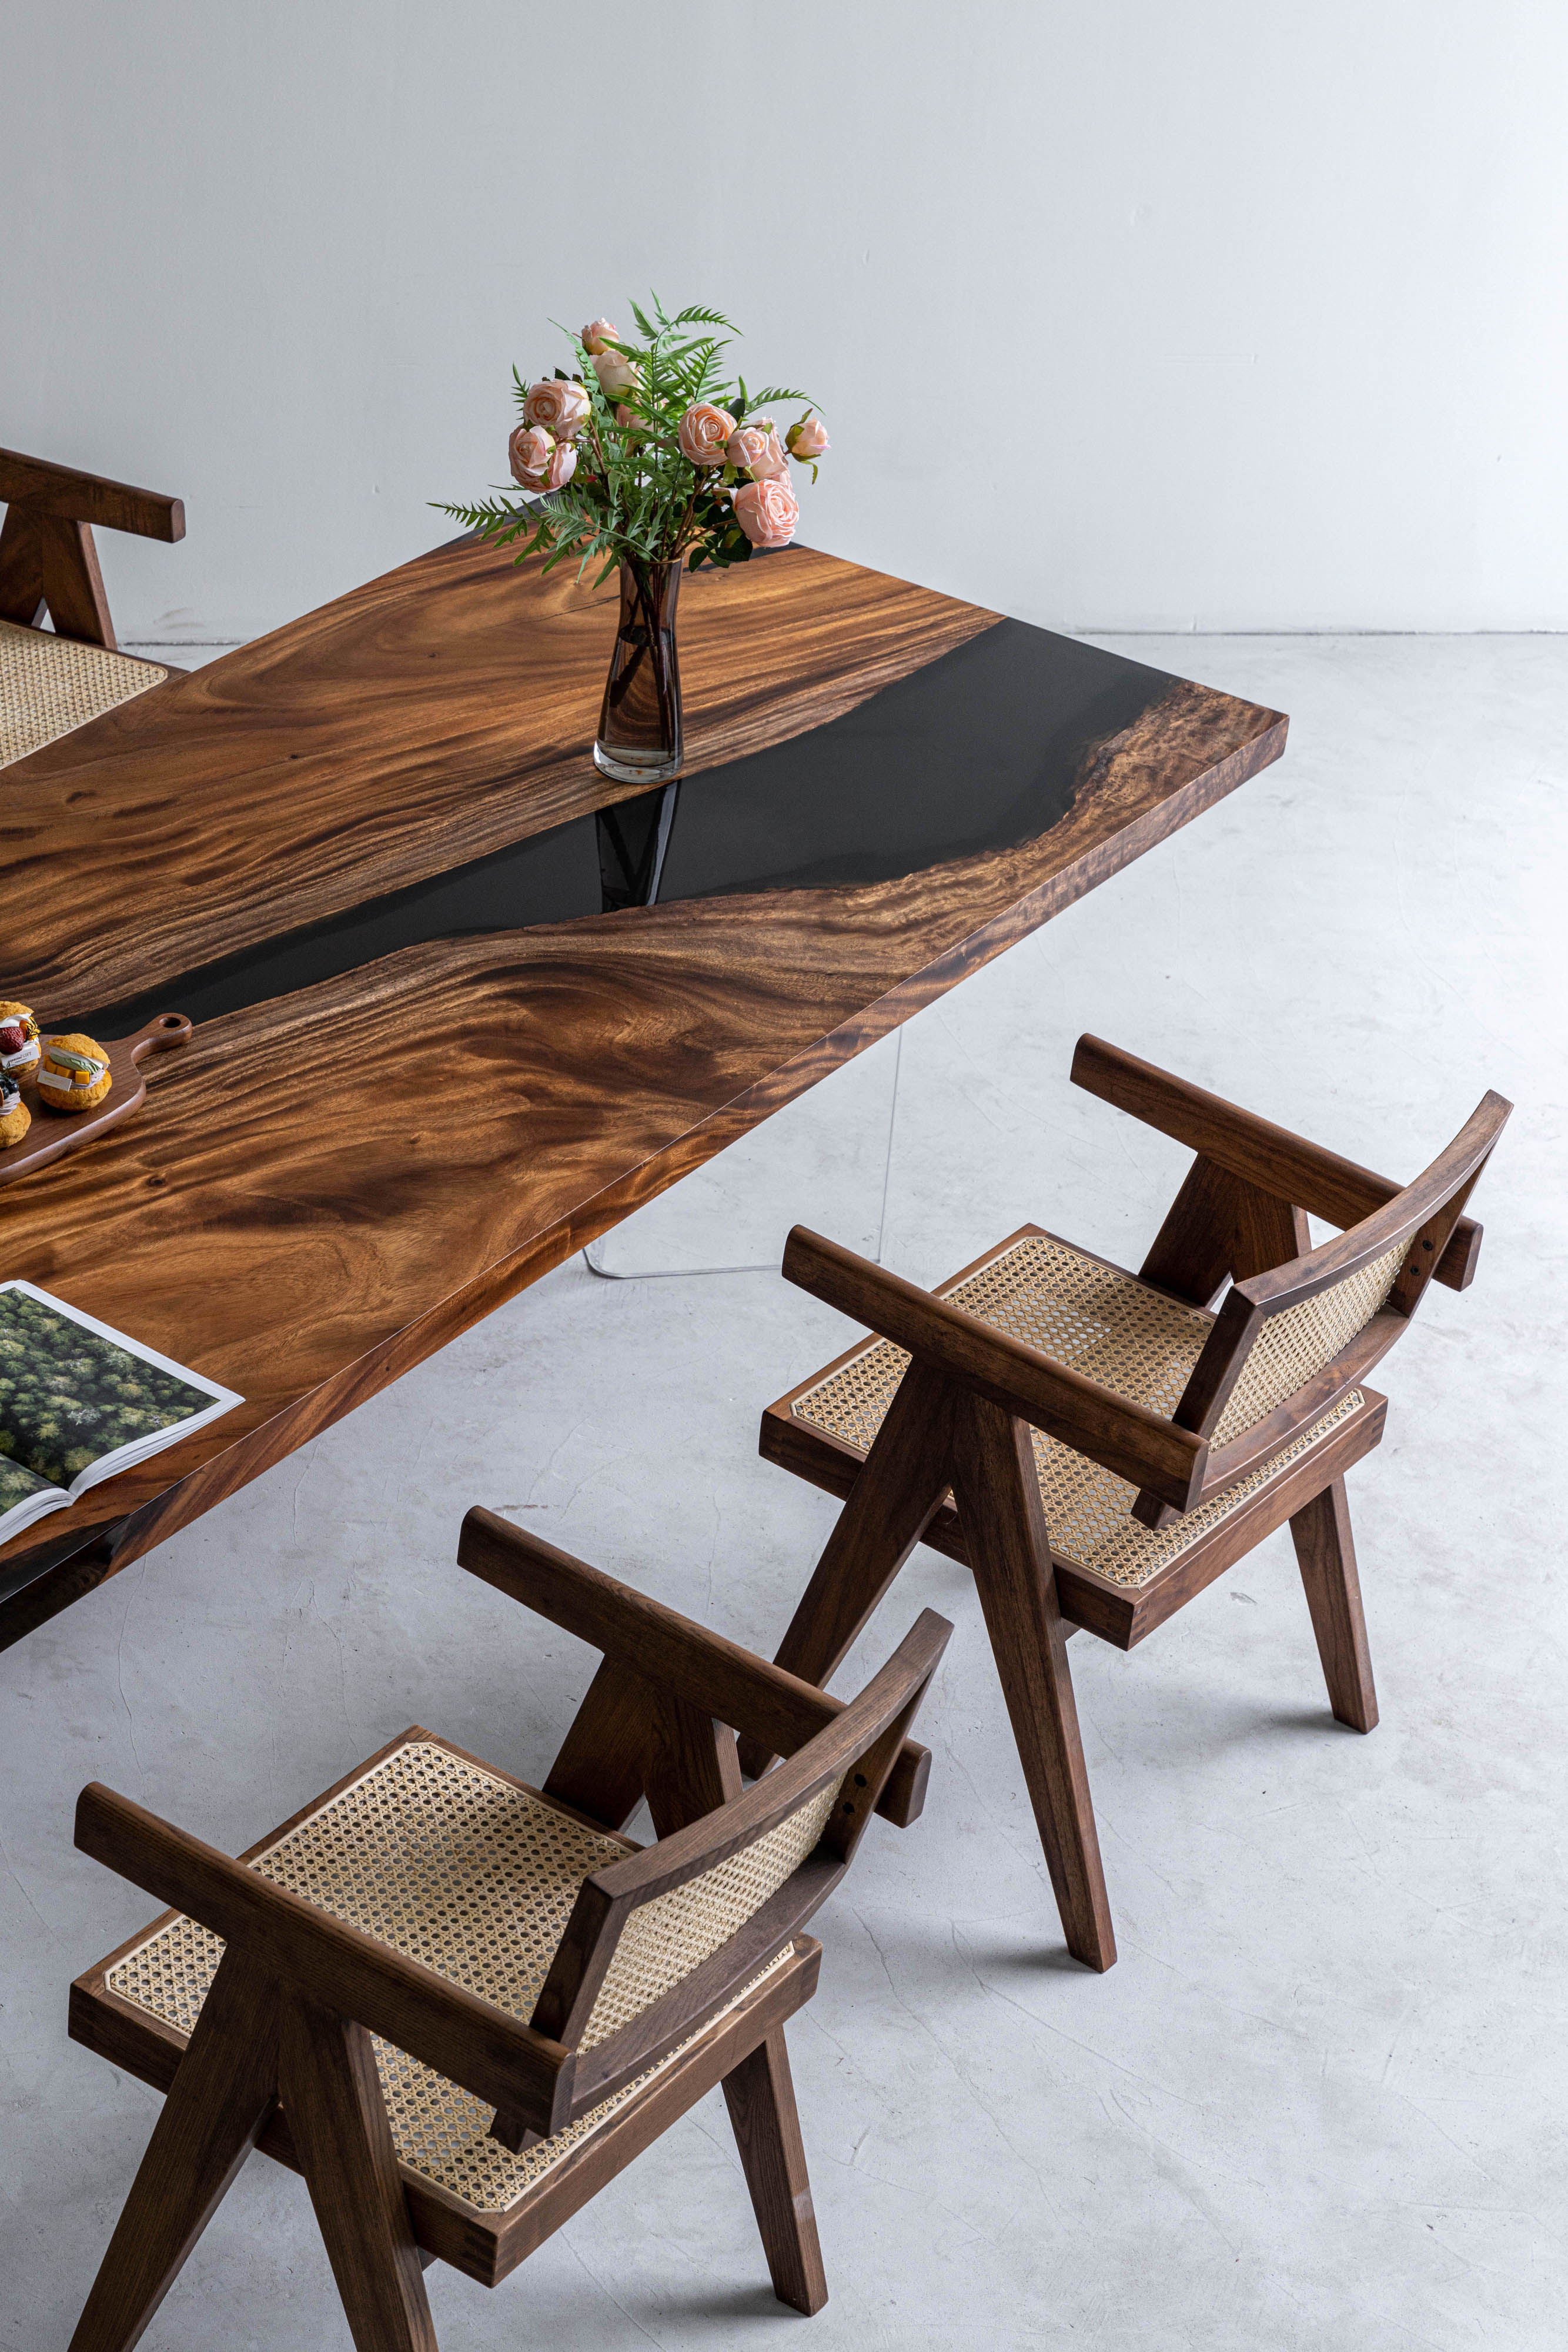 Sort valnøddefarve plettet i epoxyharpiksbord, brug sydamerikansk valnøddetræ